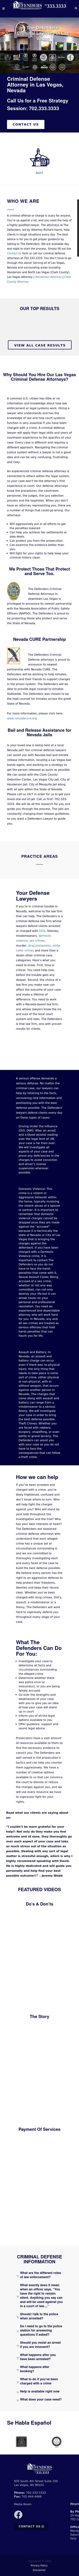 Defenders - Las Vegas NV Lawyers